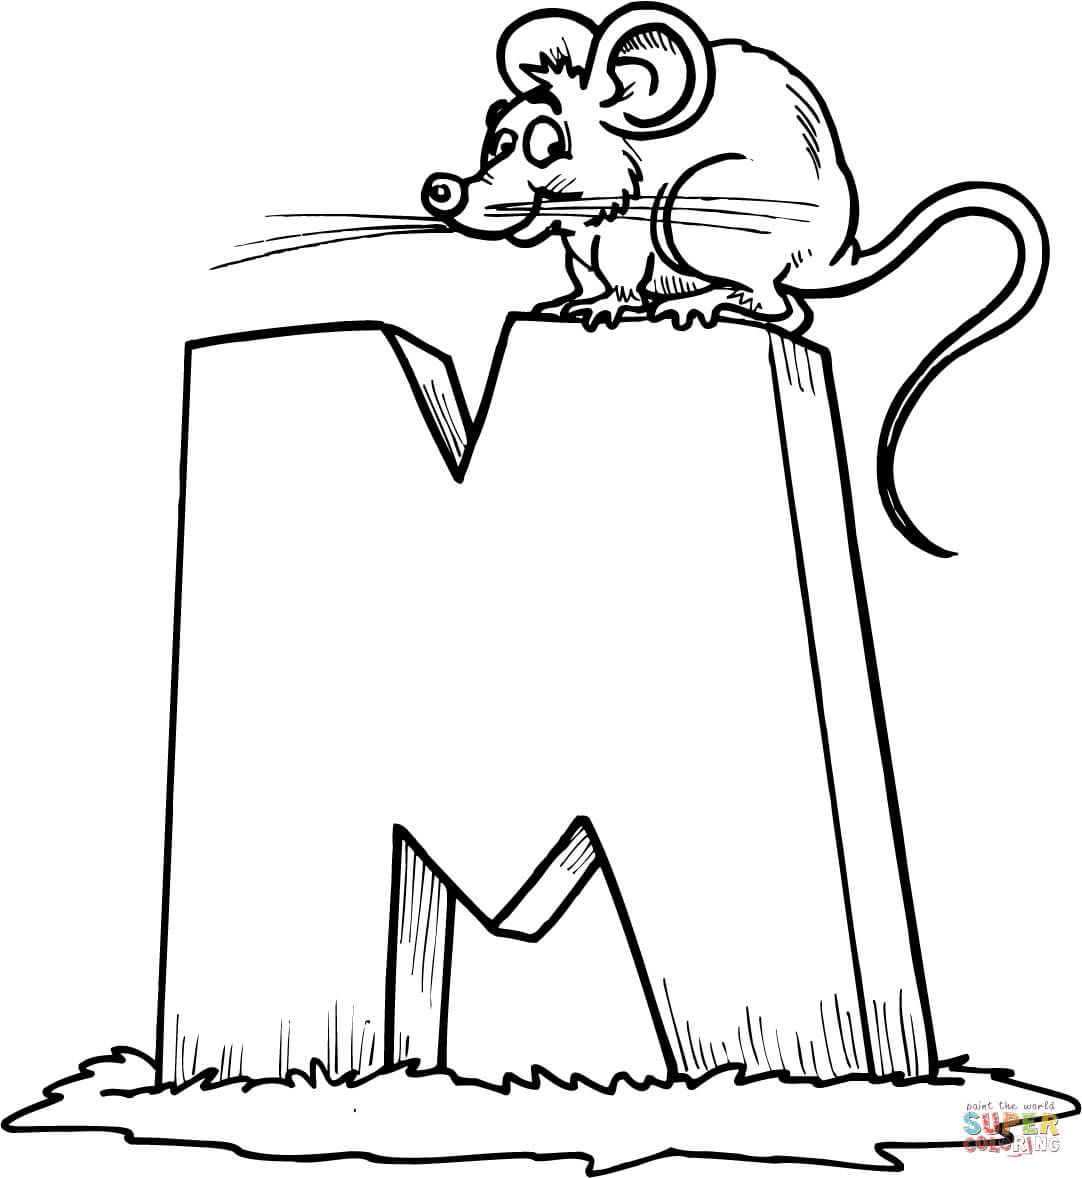 字母 M 是字母 M 中的鼠标